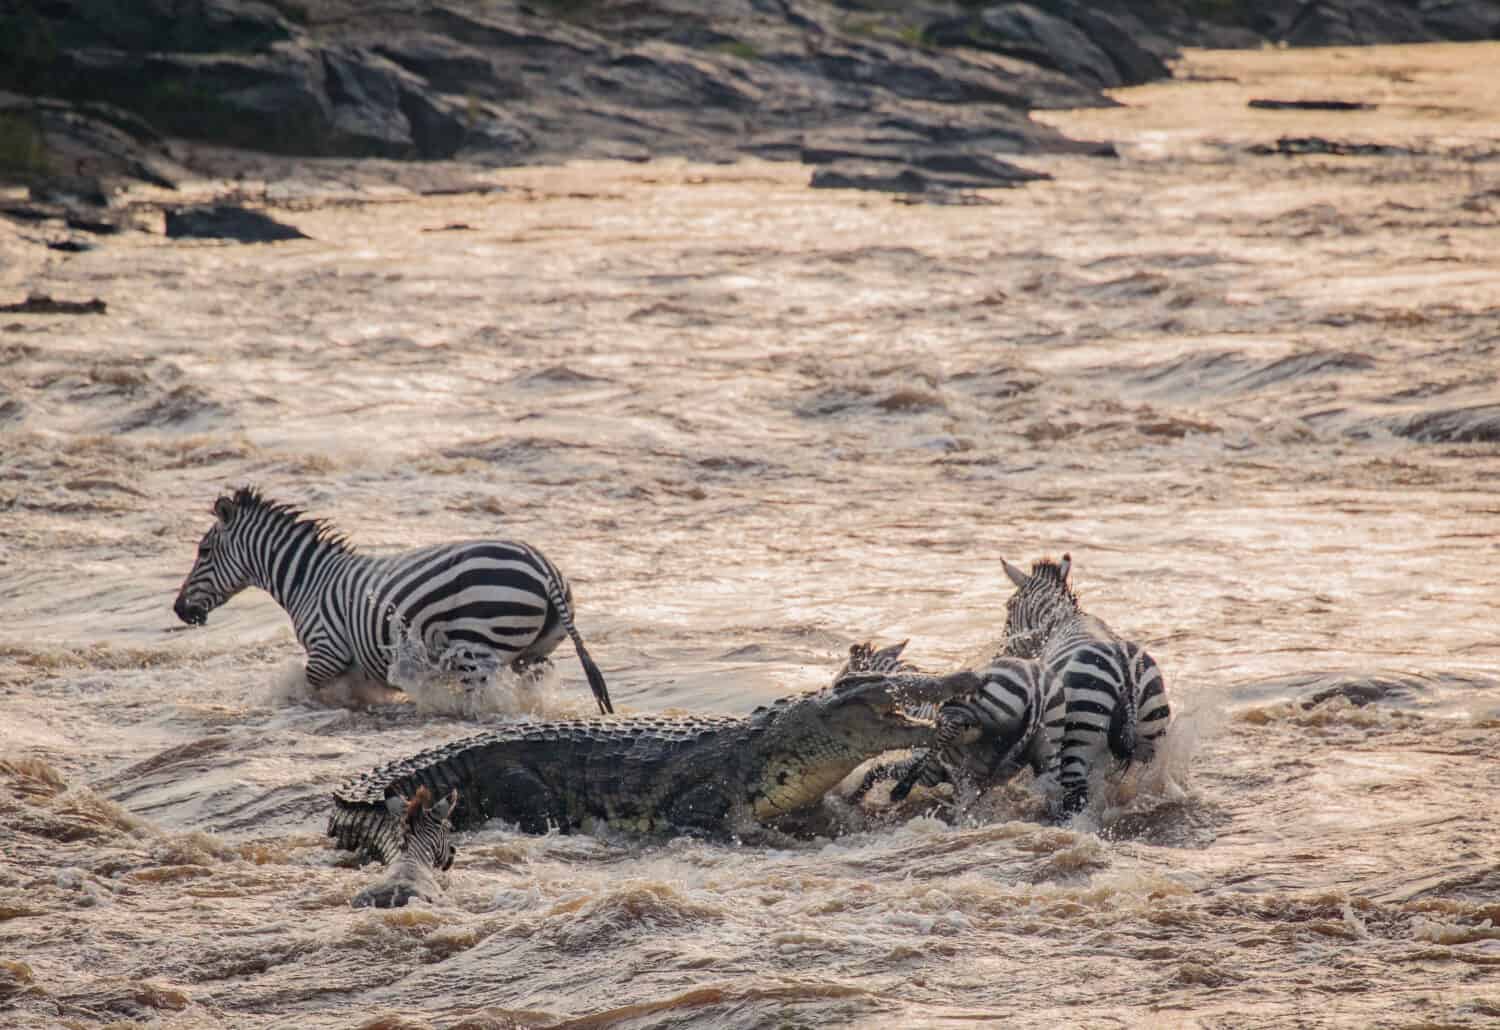 Crocodile attacking Zebra - Maasai Mara